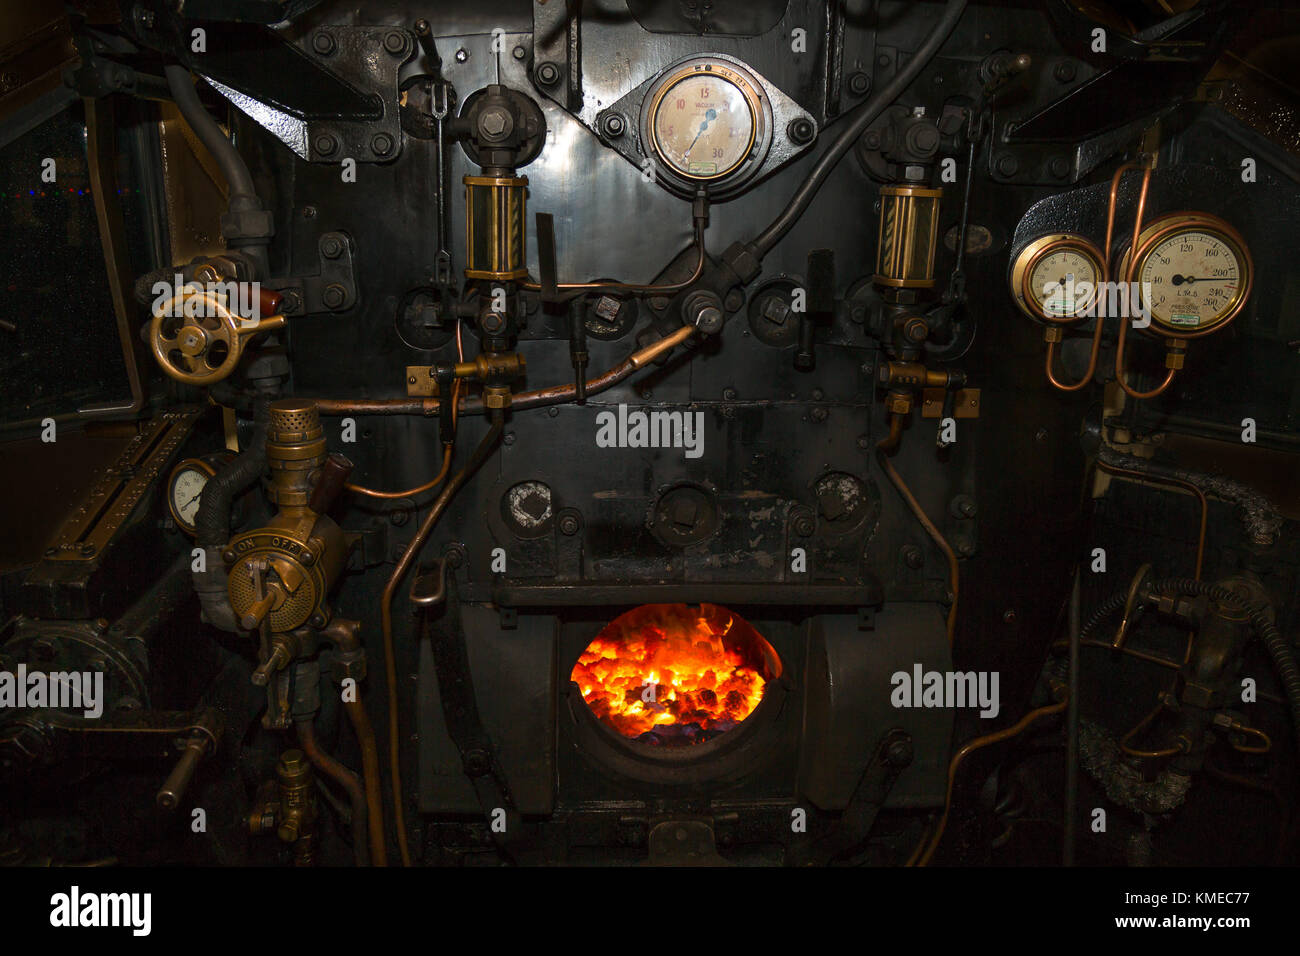 Night Shot all'interno della cabina della locomotiva a vapore, esaminando la accesa nella camera a fuoco della caldaia backplate. Valvole, le aste, tubi, manometri tutte visibili Foto Stock